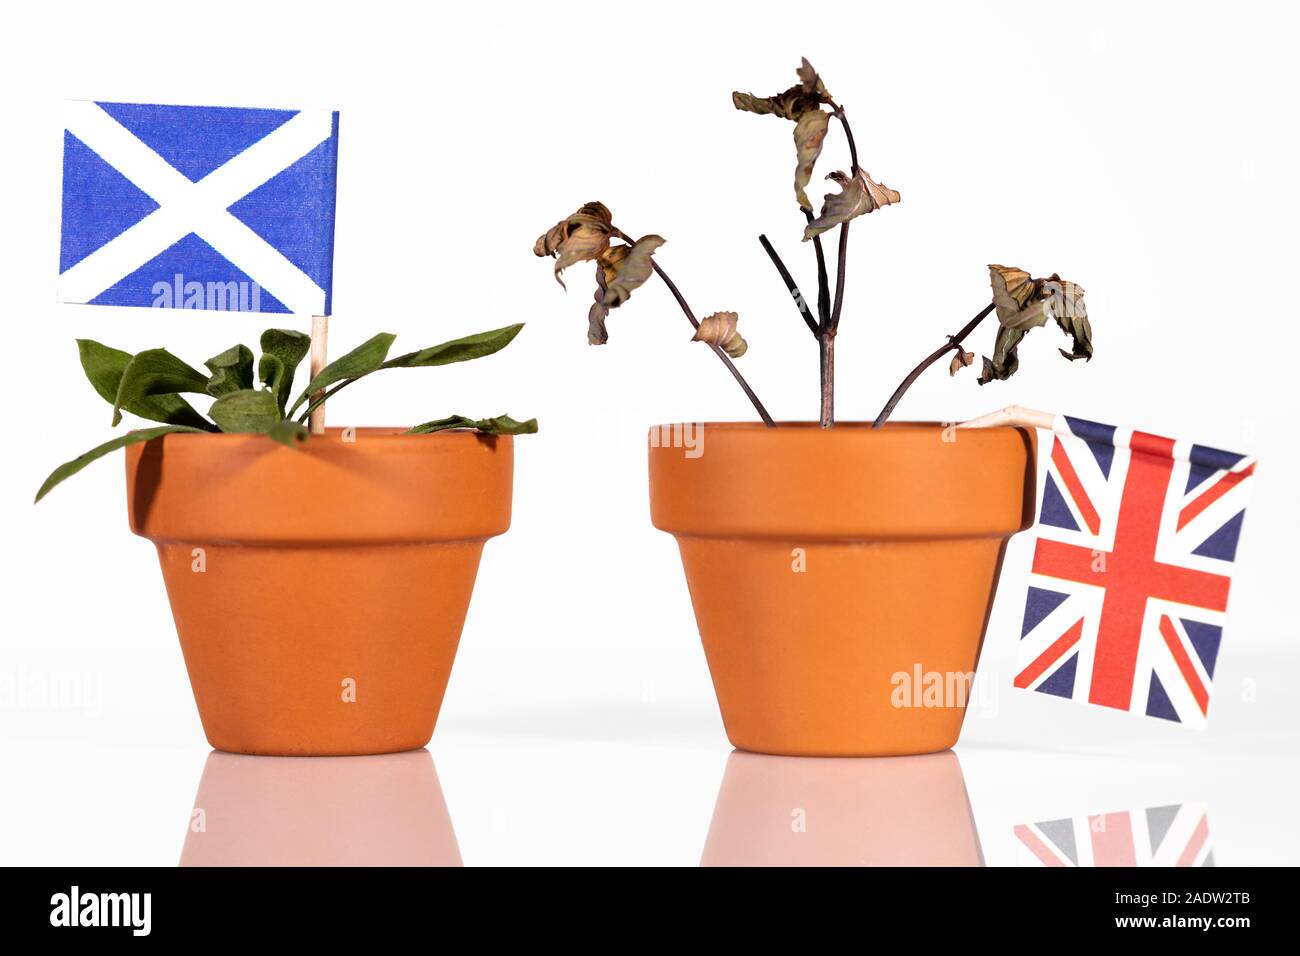 Pot de fleurs avec des drapeaux, des différents impacts de la concept brexit pour l'Écosse, la Grande-Bretagne et l'Europe ou de l'Union européenne Banque D'Images